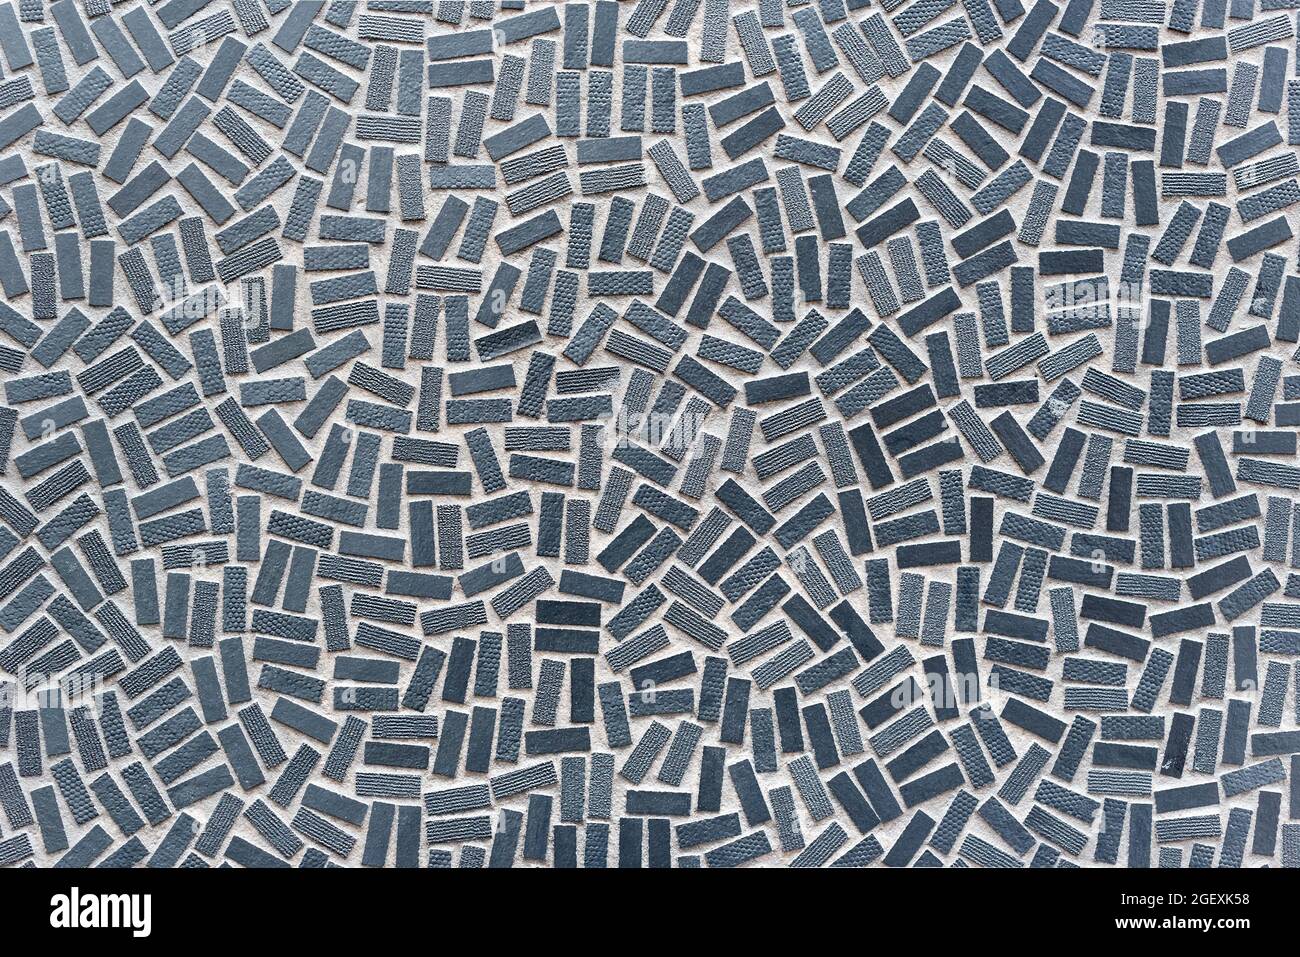 Vollformat-Hintergrundstruktur von rechteckigen grauen Mosaikfliesen in einer zufallsartigen Streuung und Muster für Dekorkonzepte Stockfoto